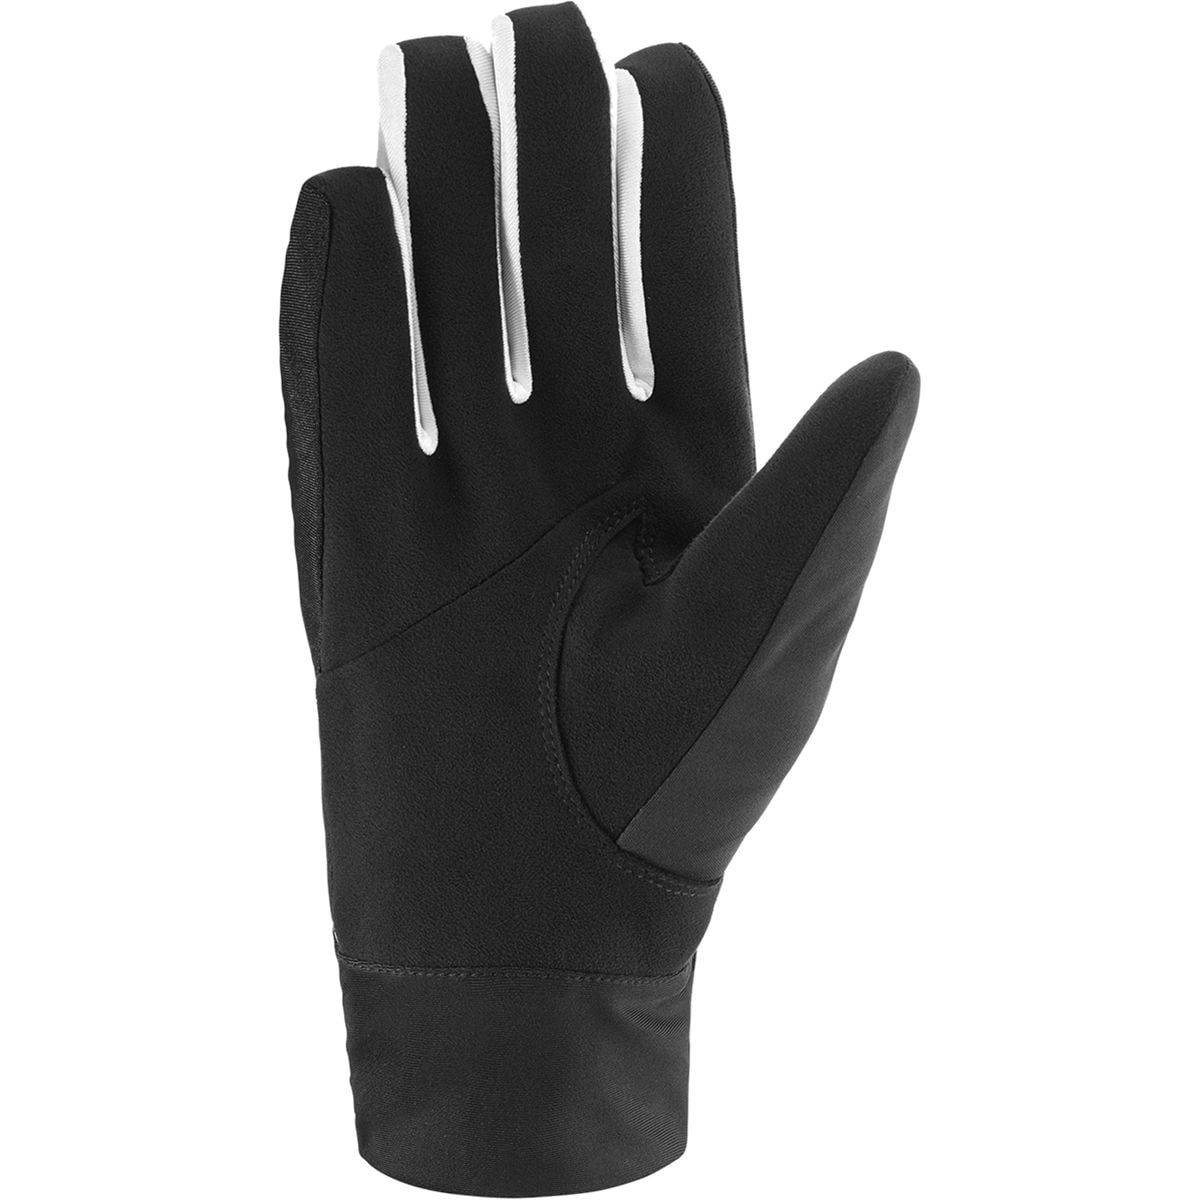 Salomon RS Pro WS Glove - Accessories